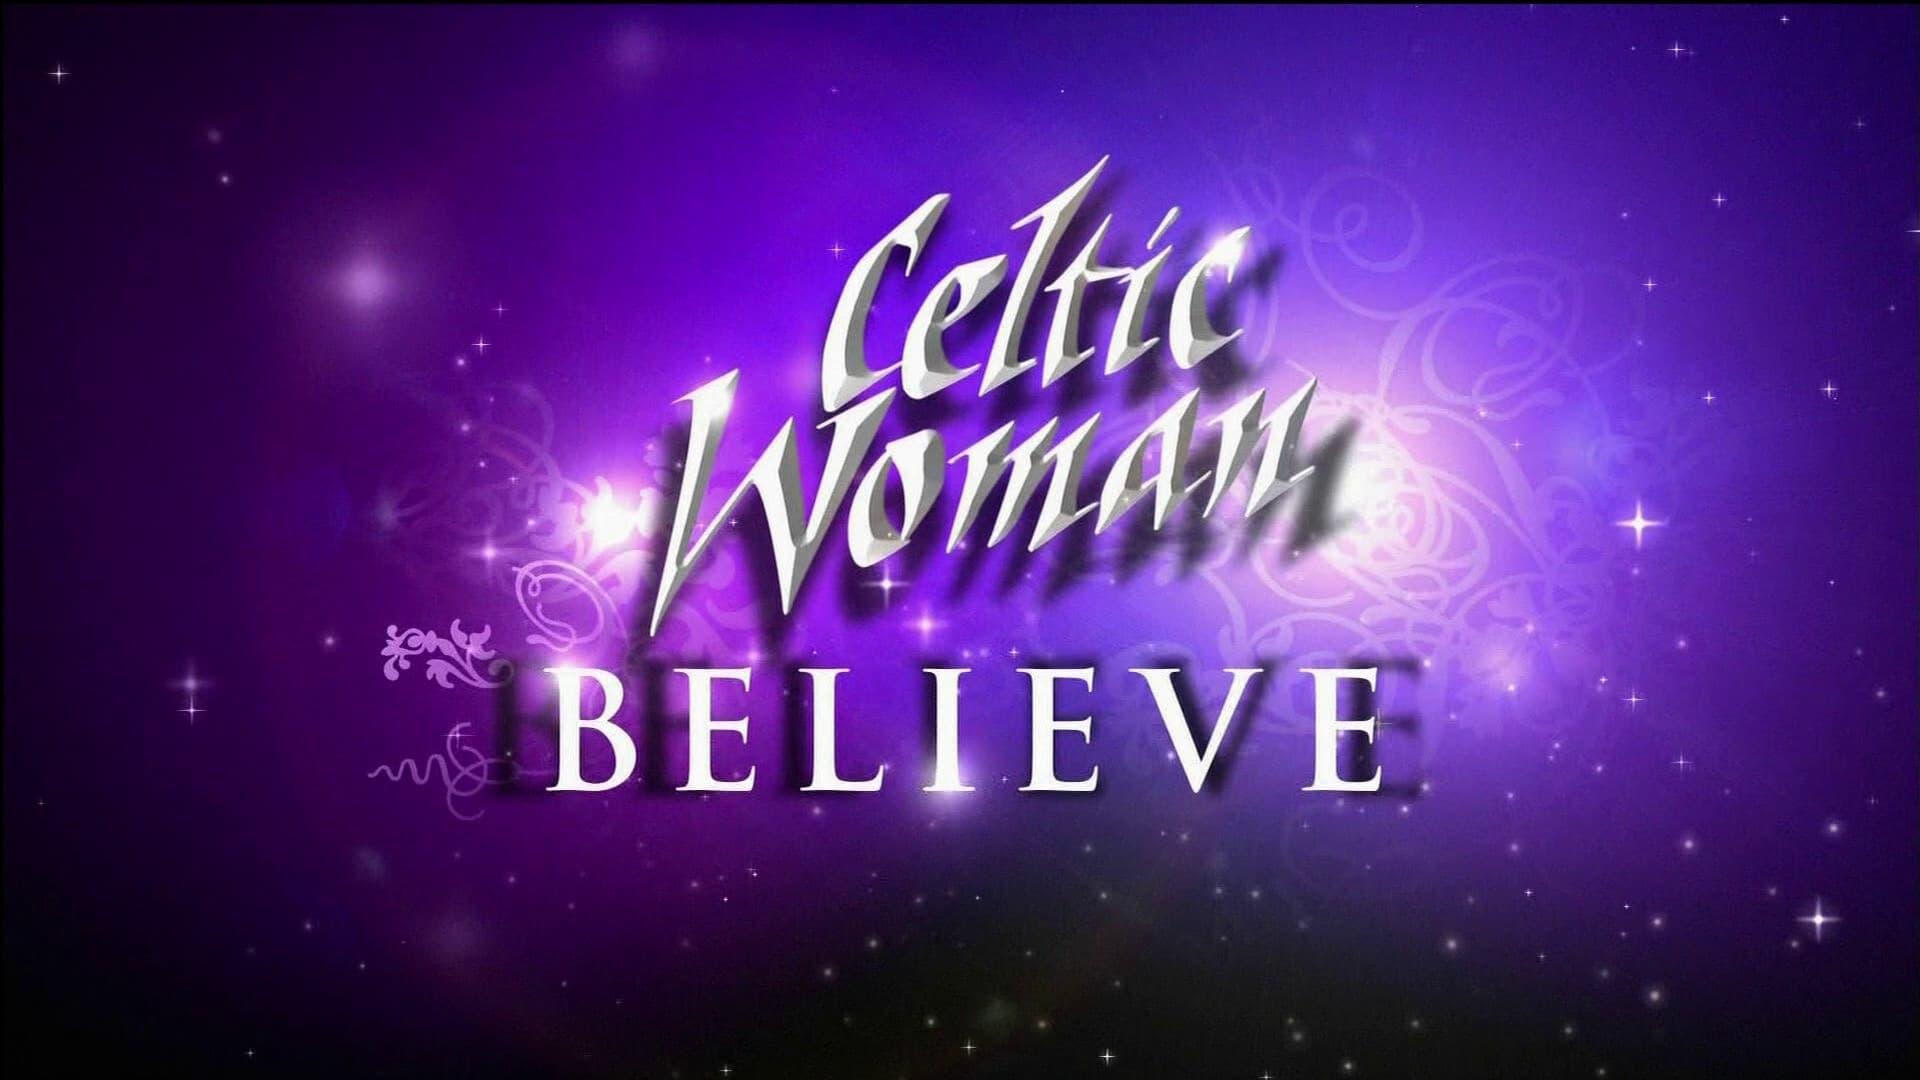 Celtic Woman: Believe backdrop